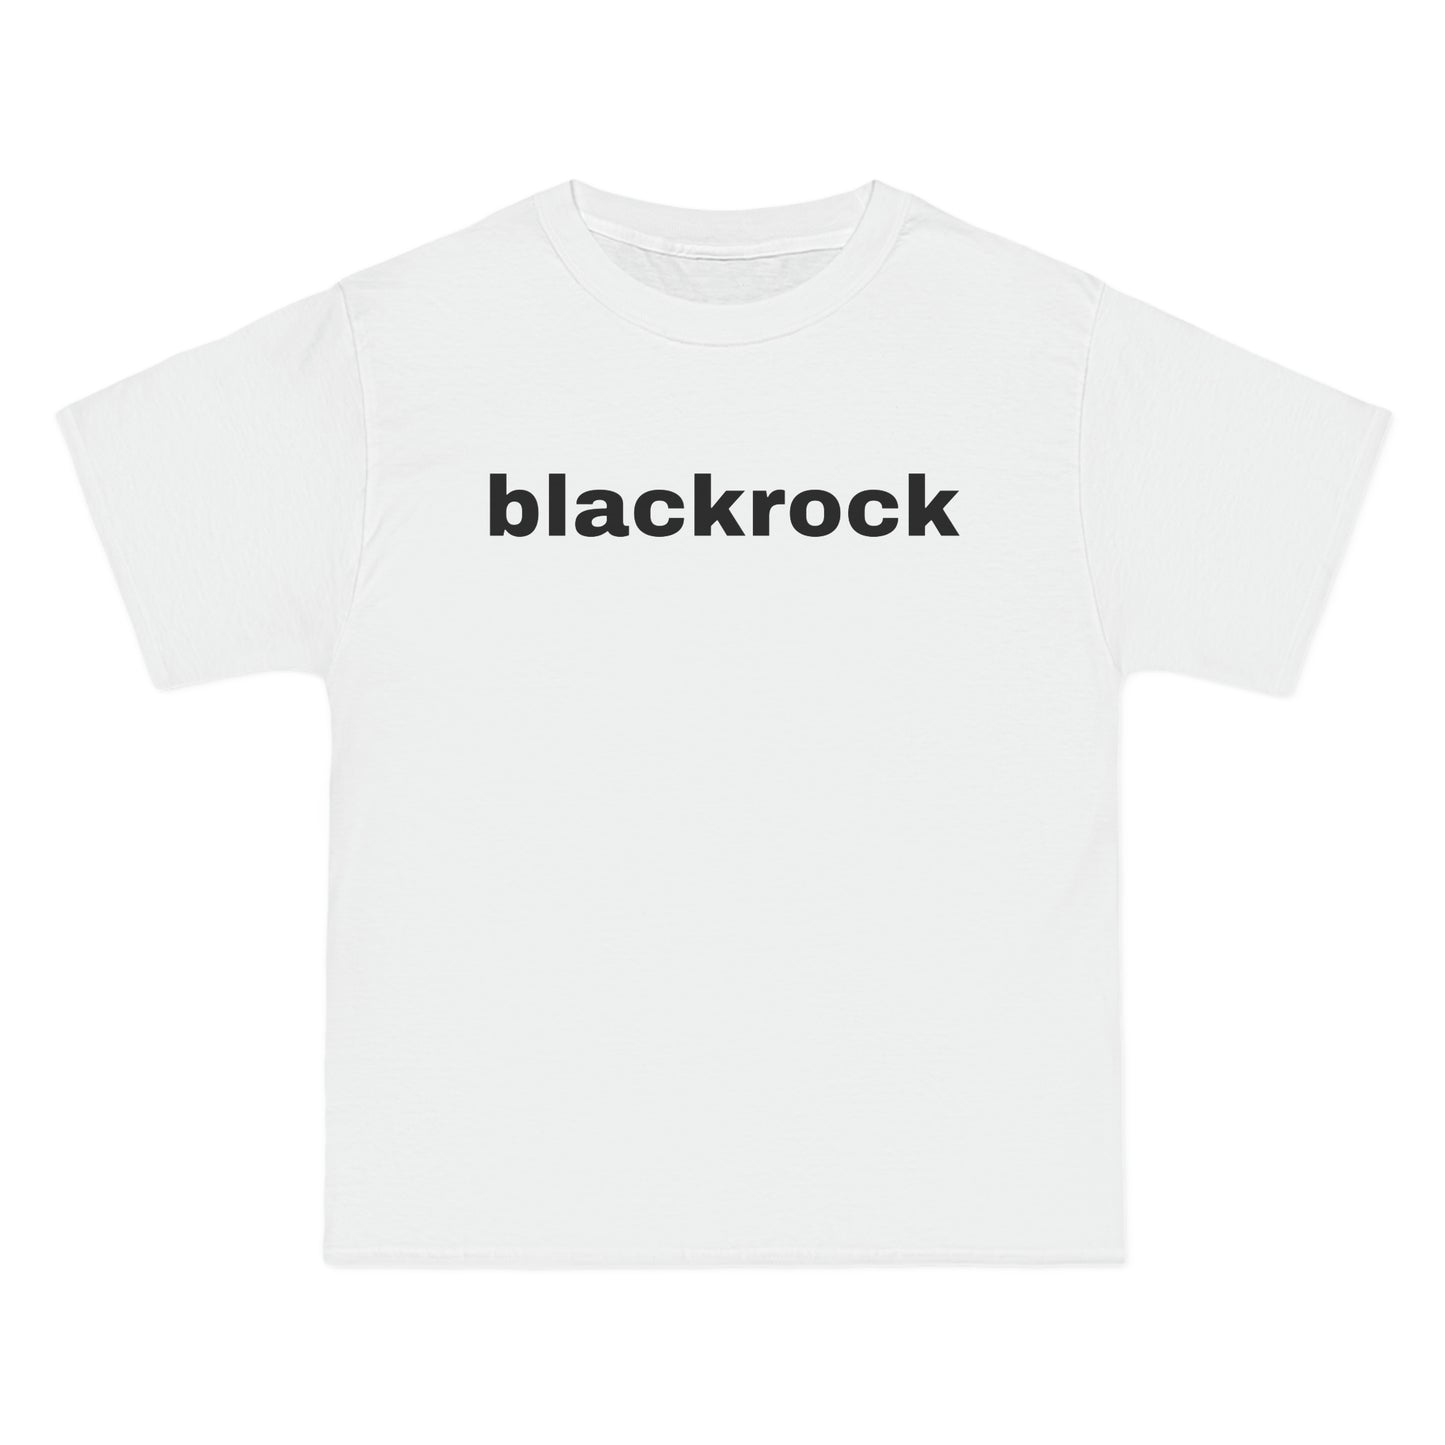 blackrock Tee